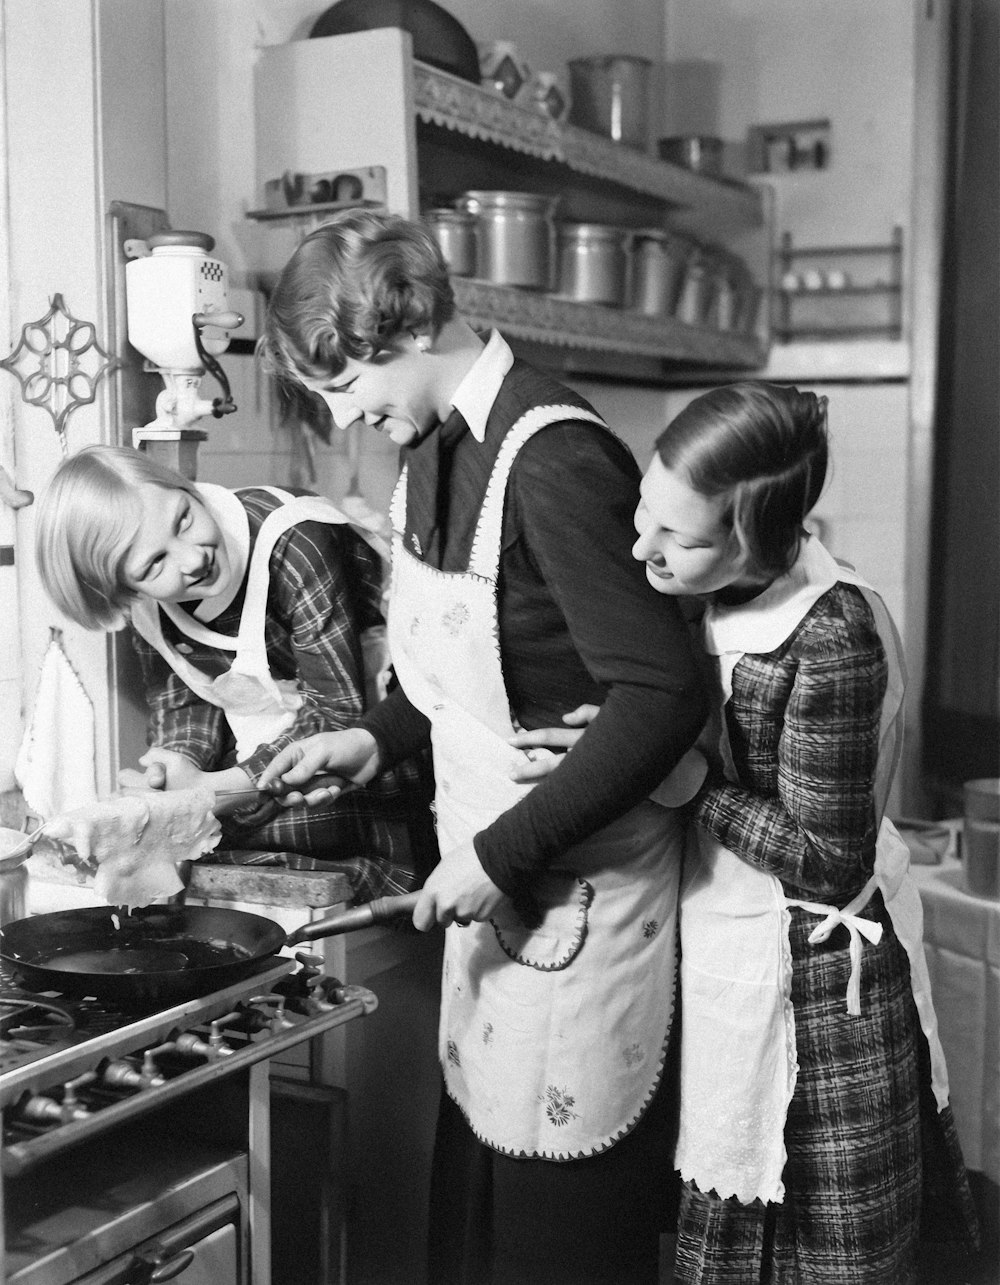 Una foto en blanco y negro de tres mujeres cocinando en una cocina